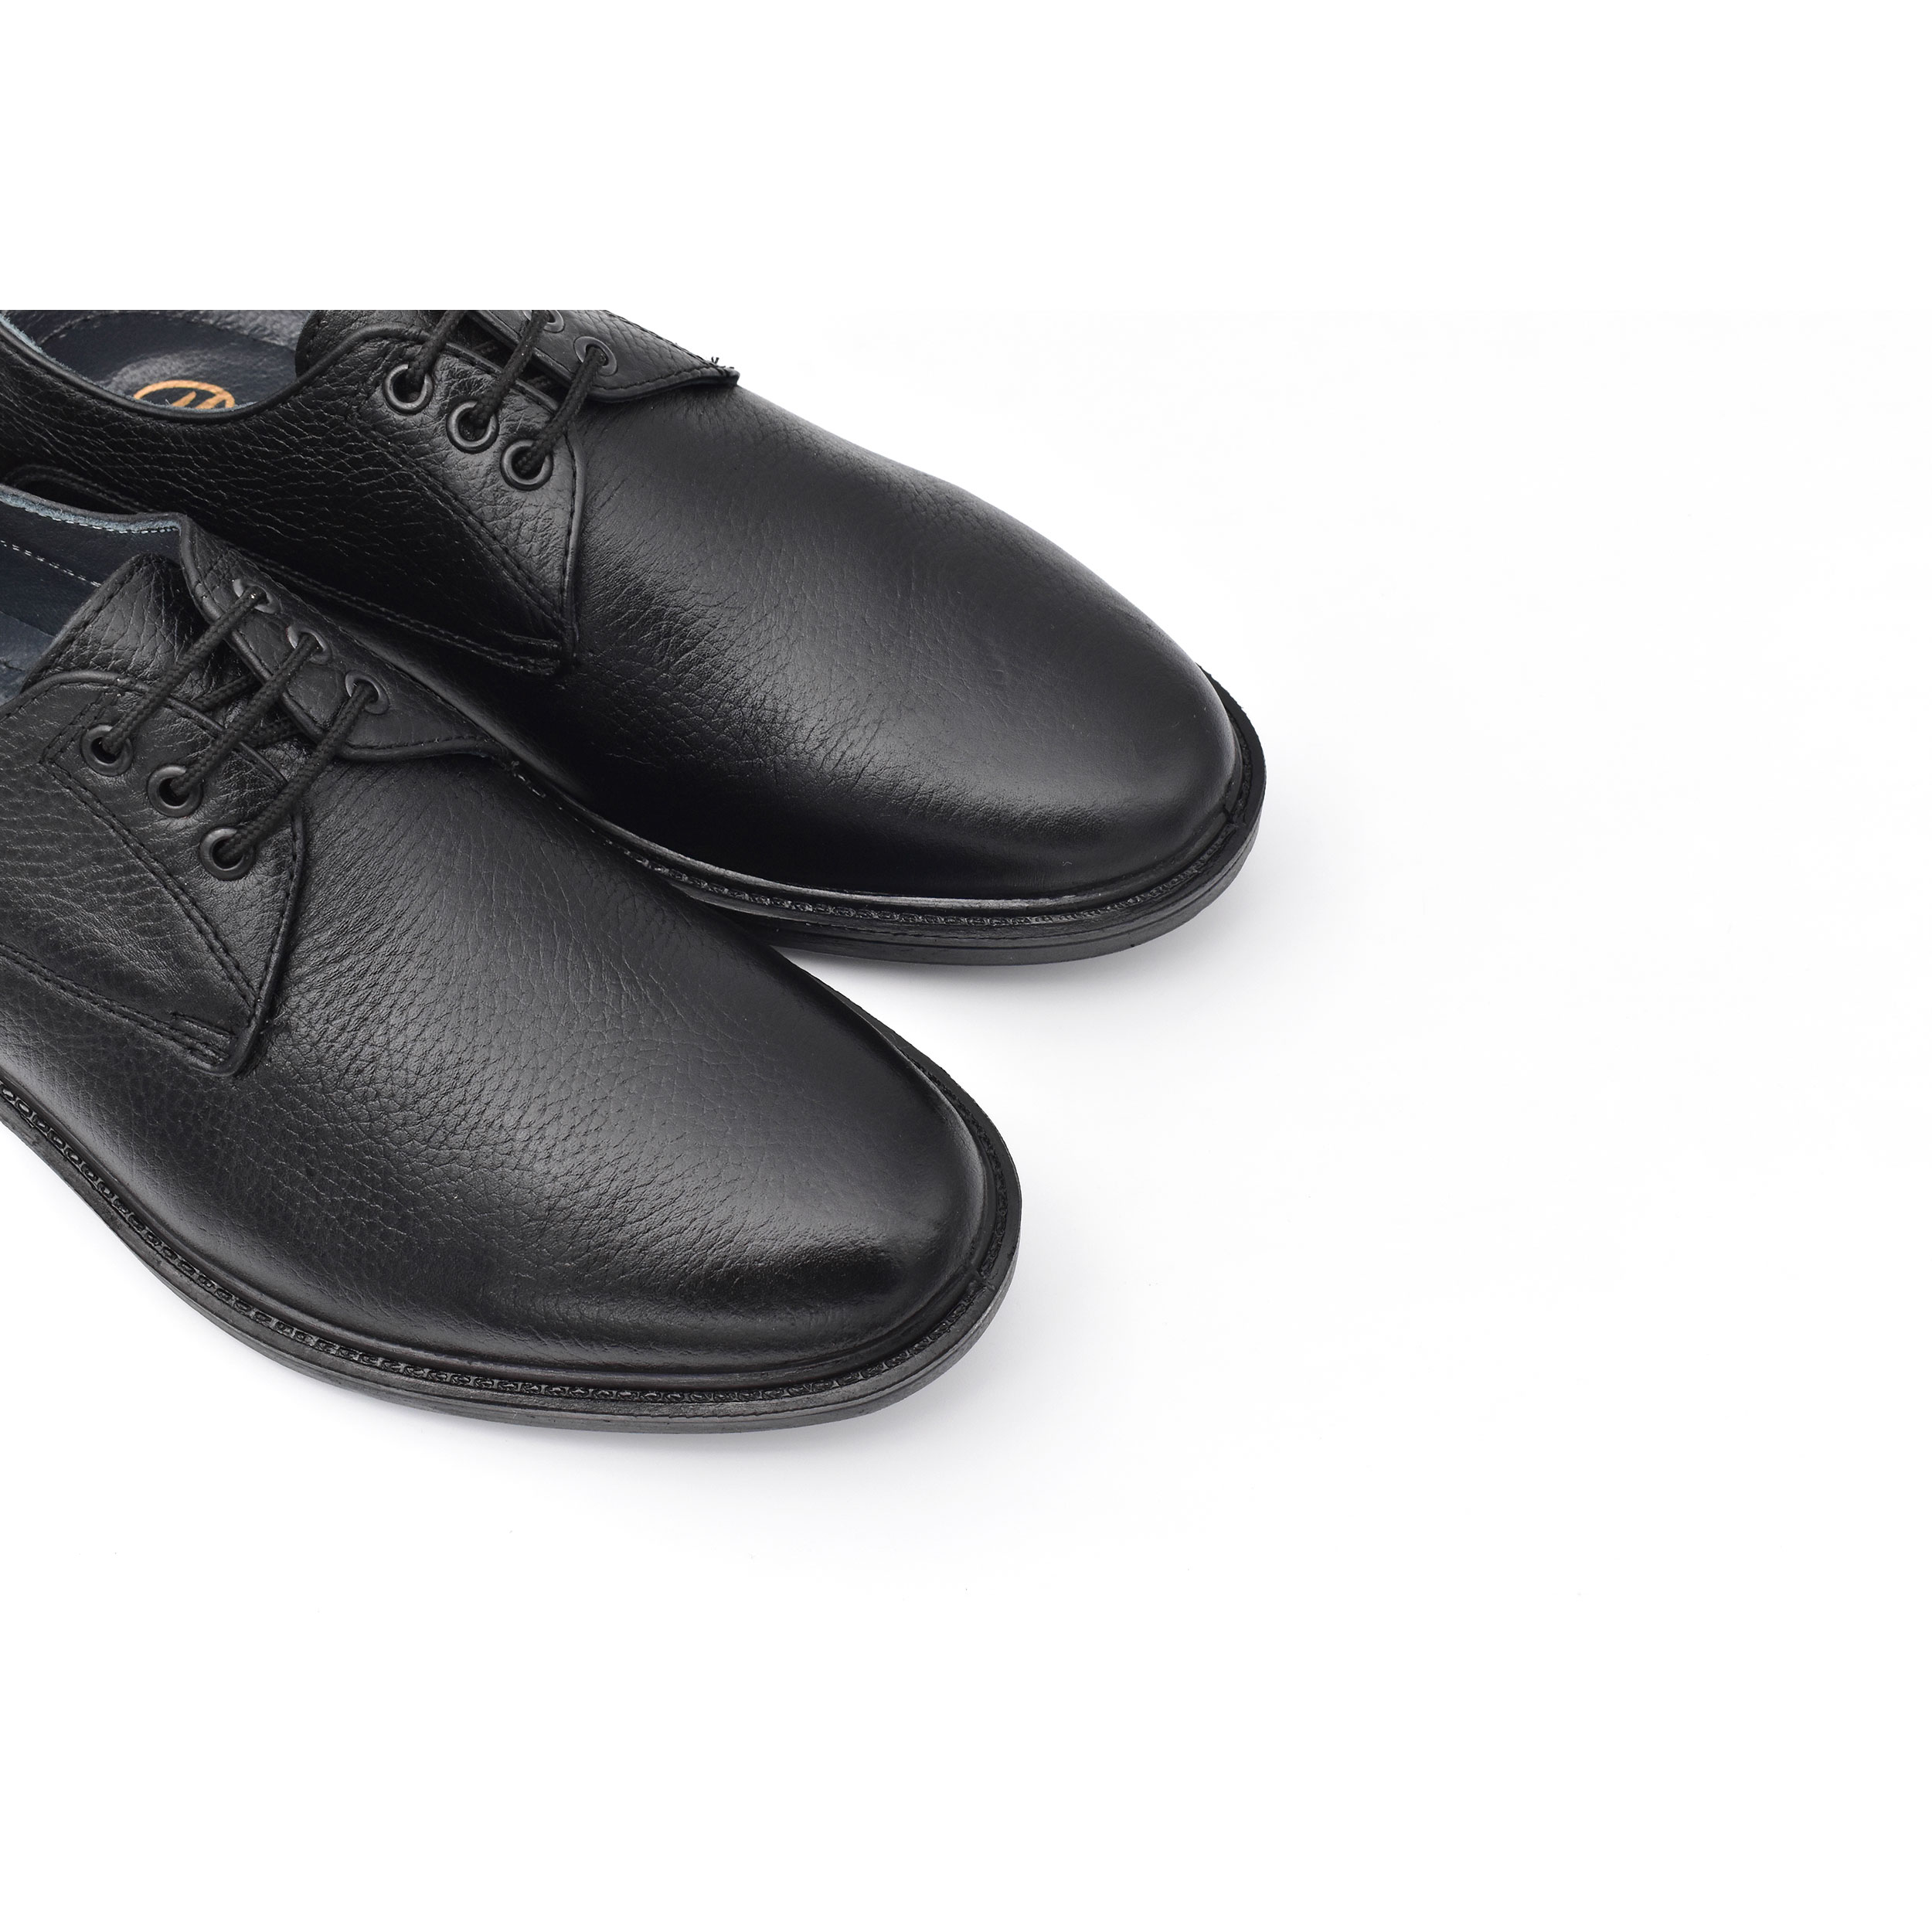 کفش مردانه پاما مدل Malavan کد G1180 -  - 3